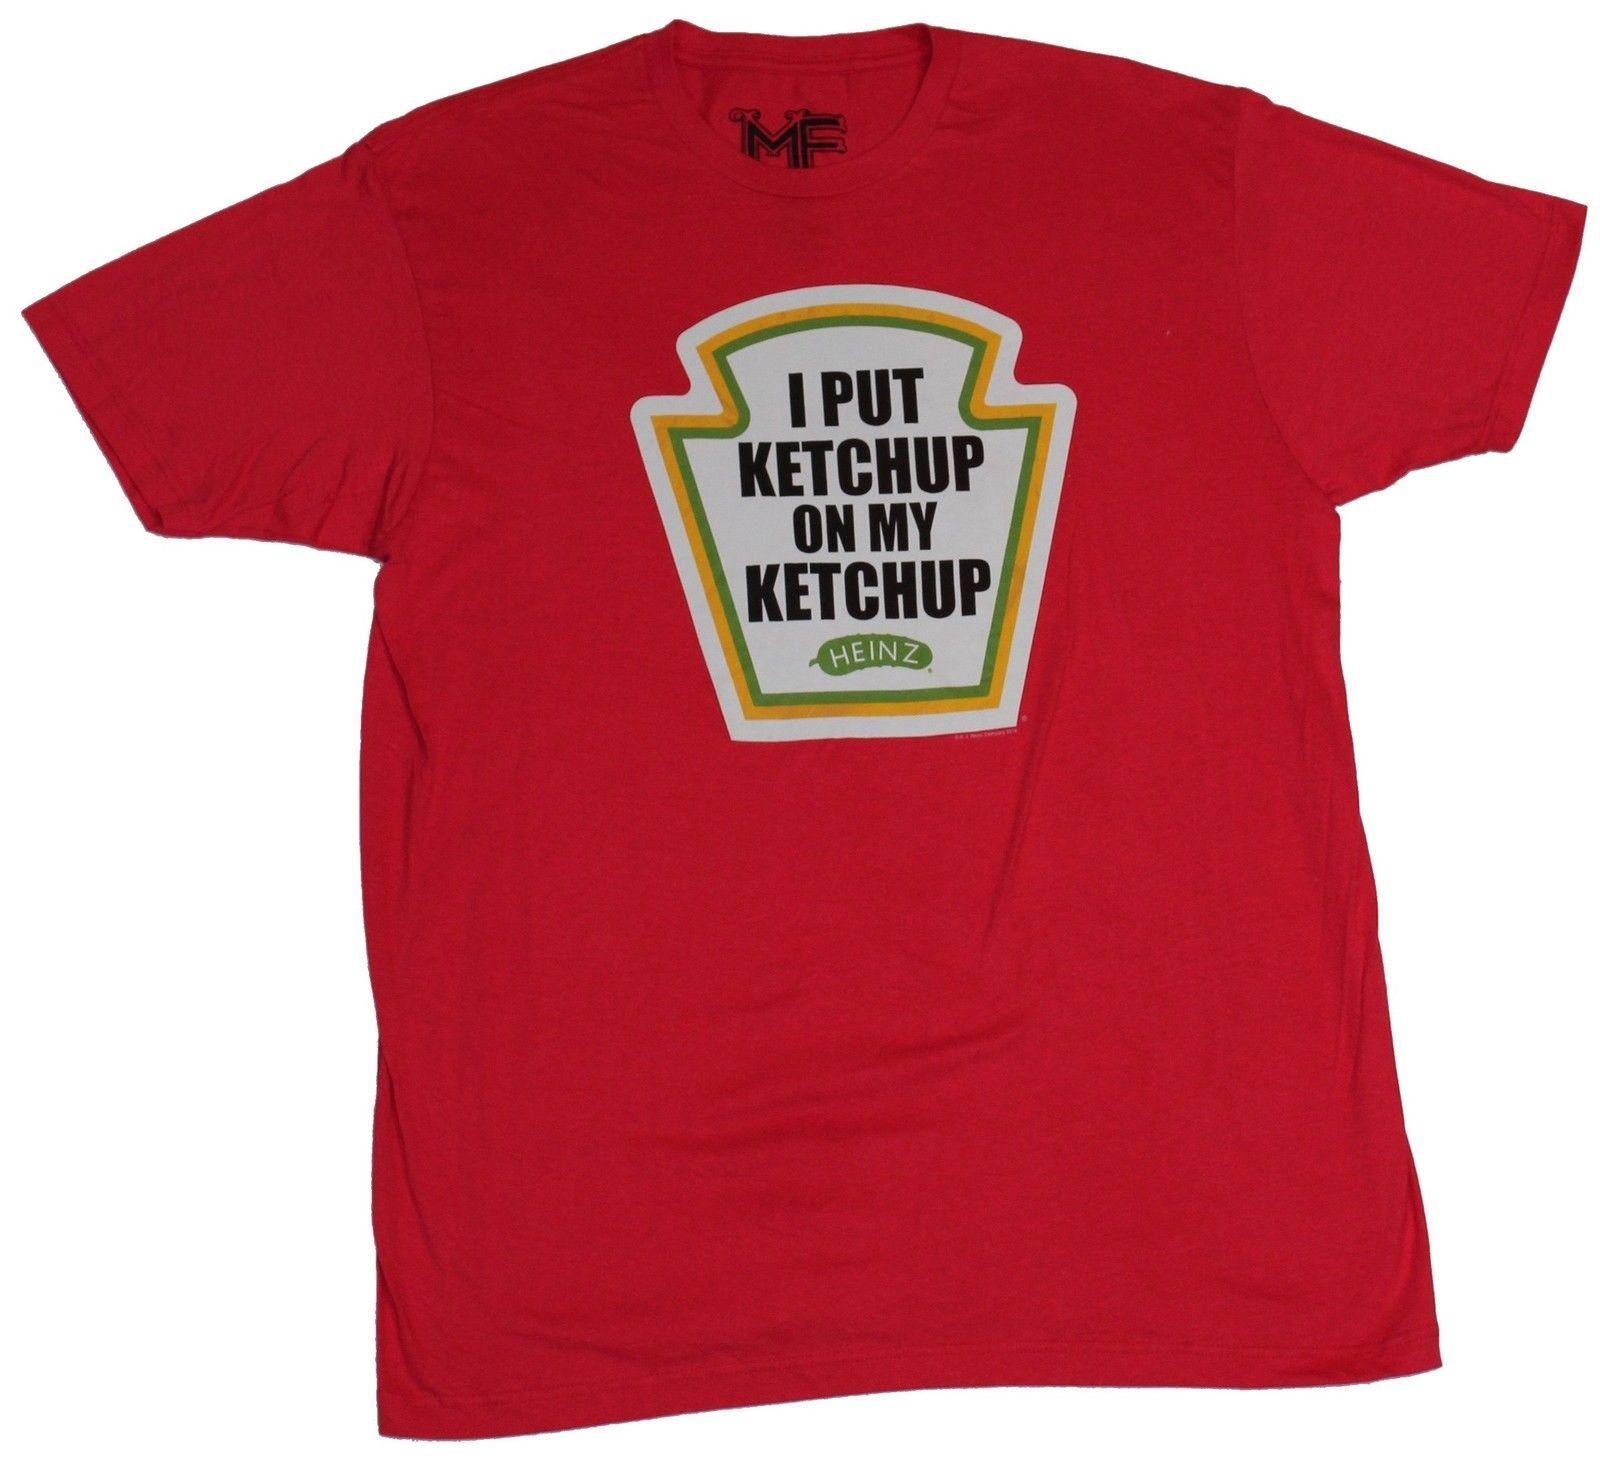 Ketchup Logo - Details About Heinz Ketchup Mens T Shirt Put Ketchup On My Ketchup Logo Image